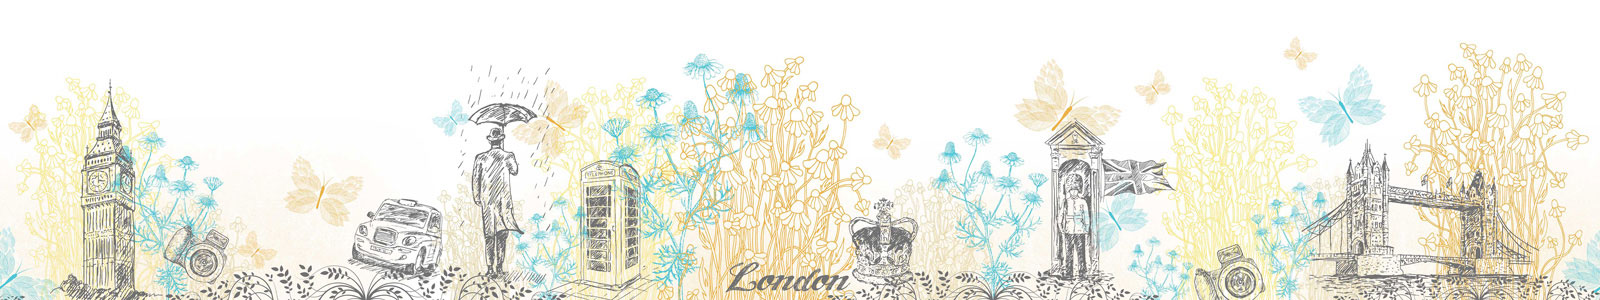 №4806 - Рисунки Лондона, ромашек и бабочек